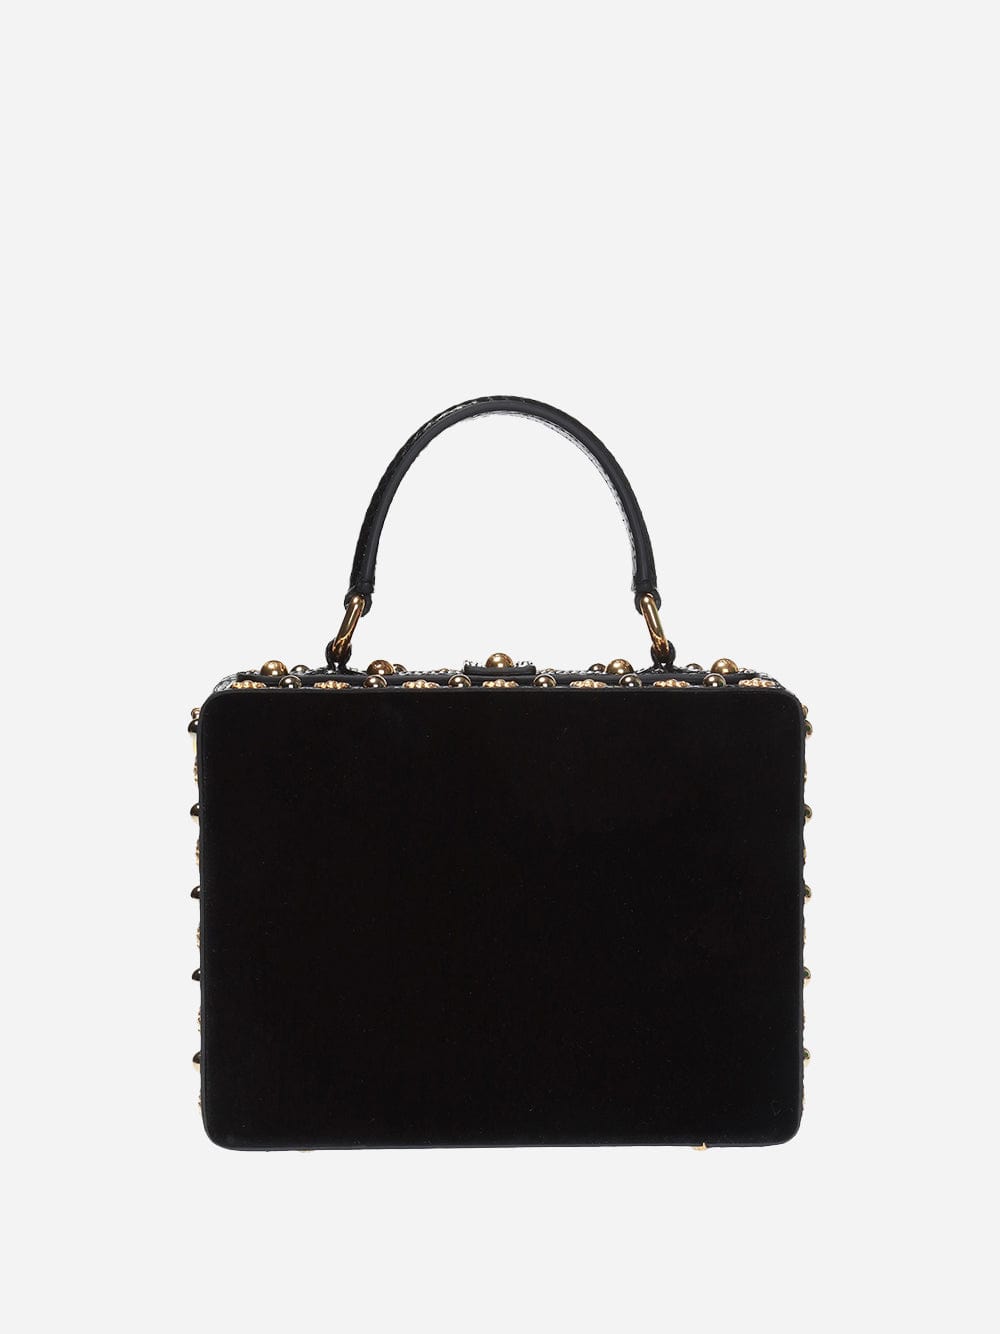 Dolce & Gabbana Embellished Box Shoulder Bag